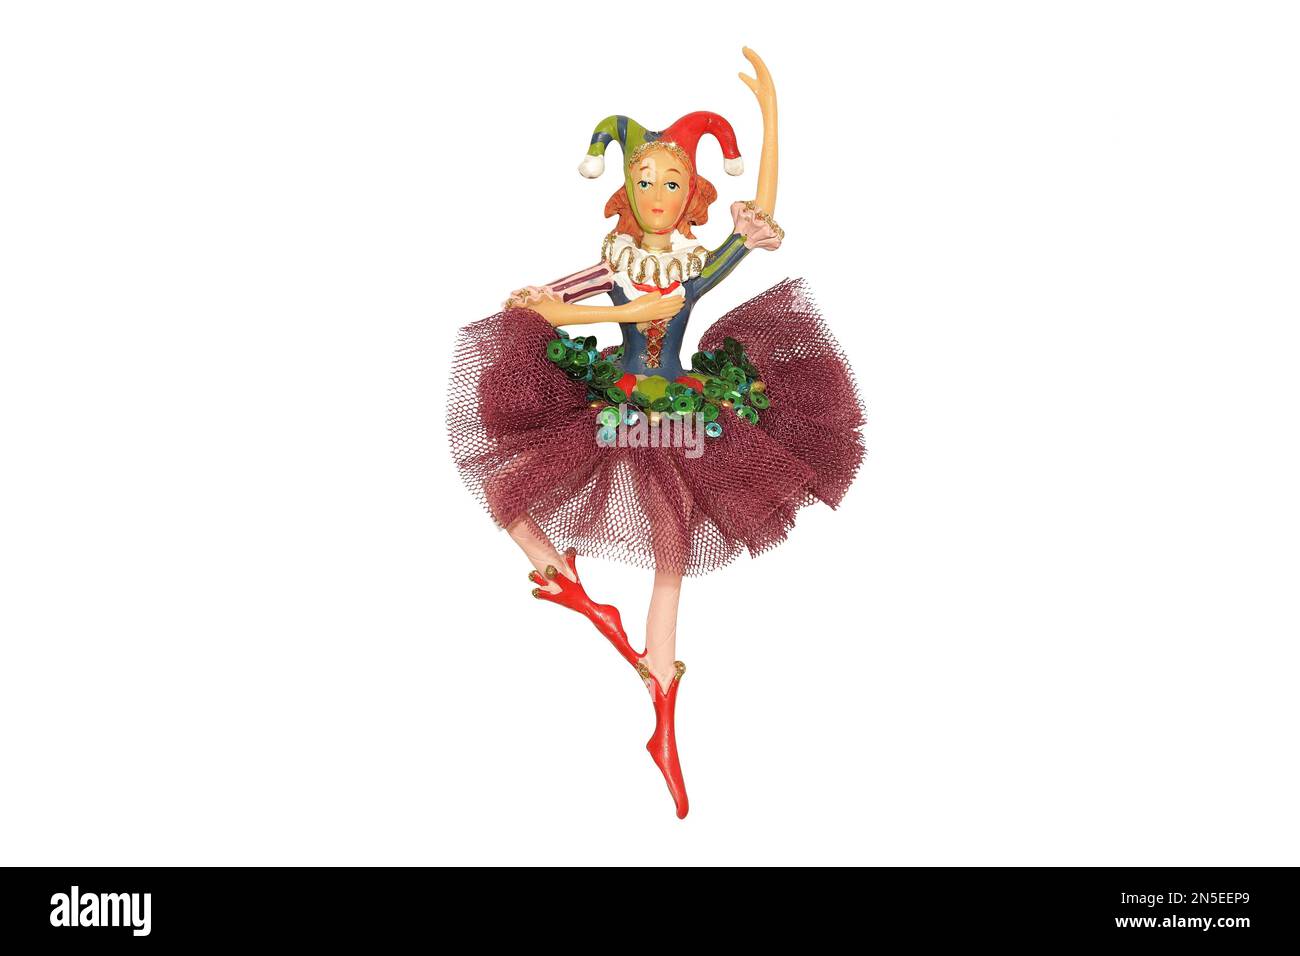 figurine d'une ballerine avec une calotte de jester isolée sur fond blanc Banque D'Images